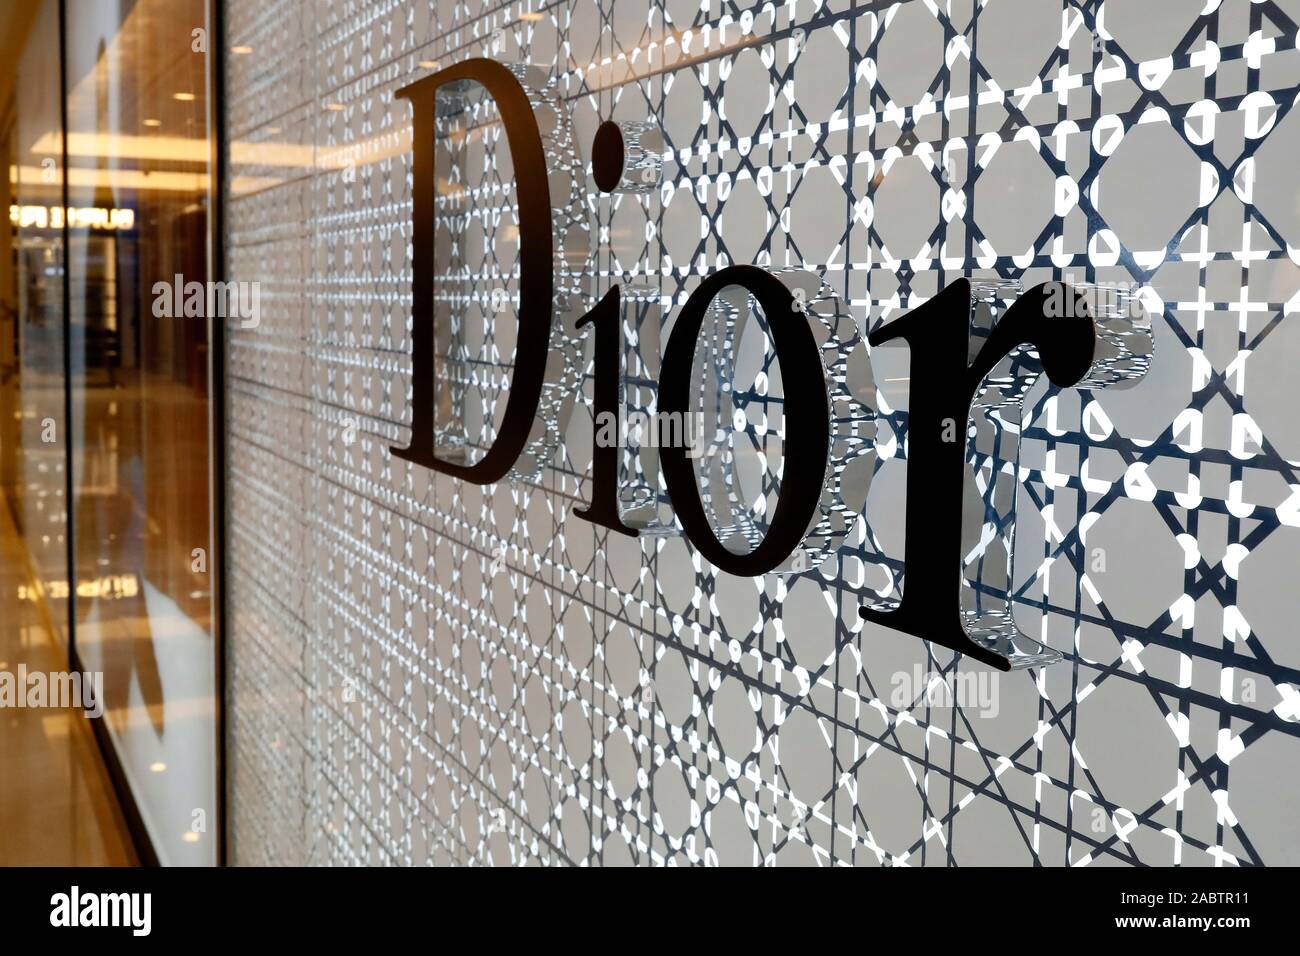 Dior tạm ngưng hoạt động TTTM Tràng Tiền Plaza đìu hiu khách  Thời trang   Việt Giải Trí